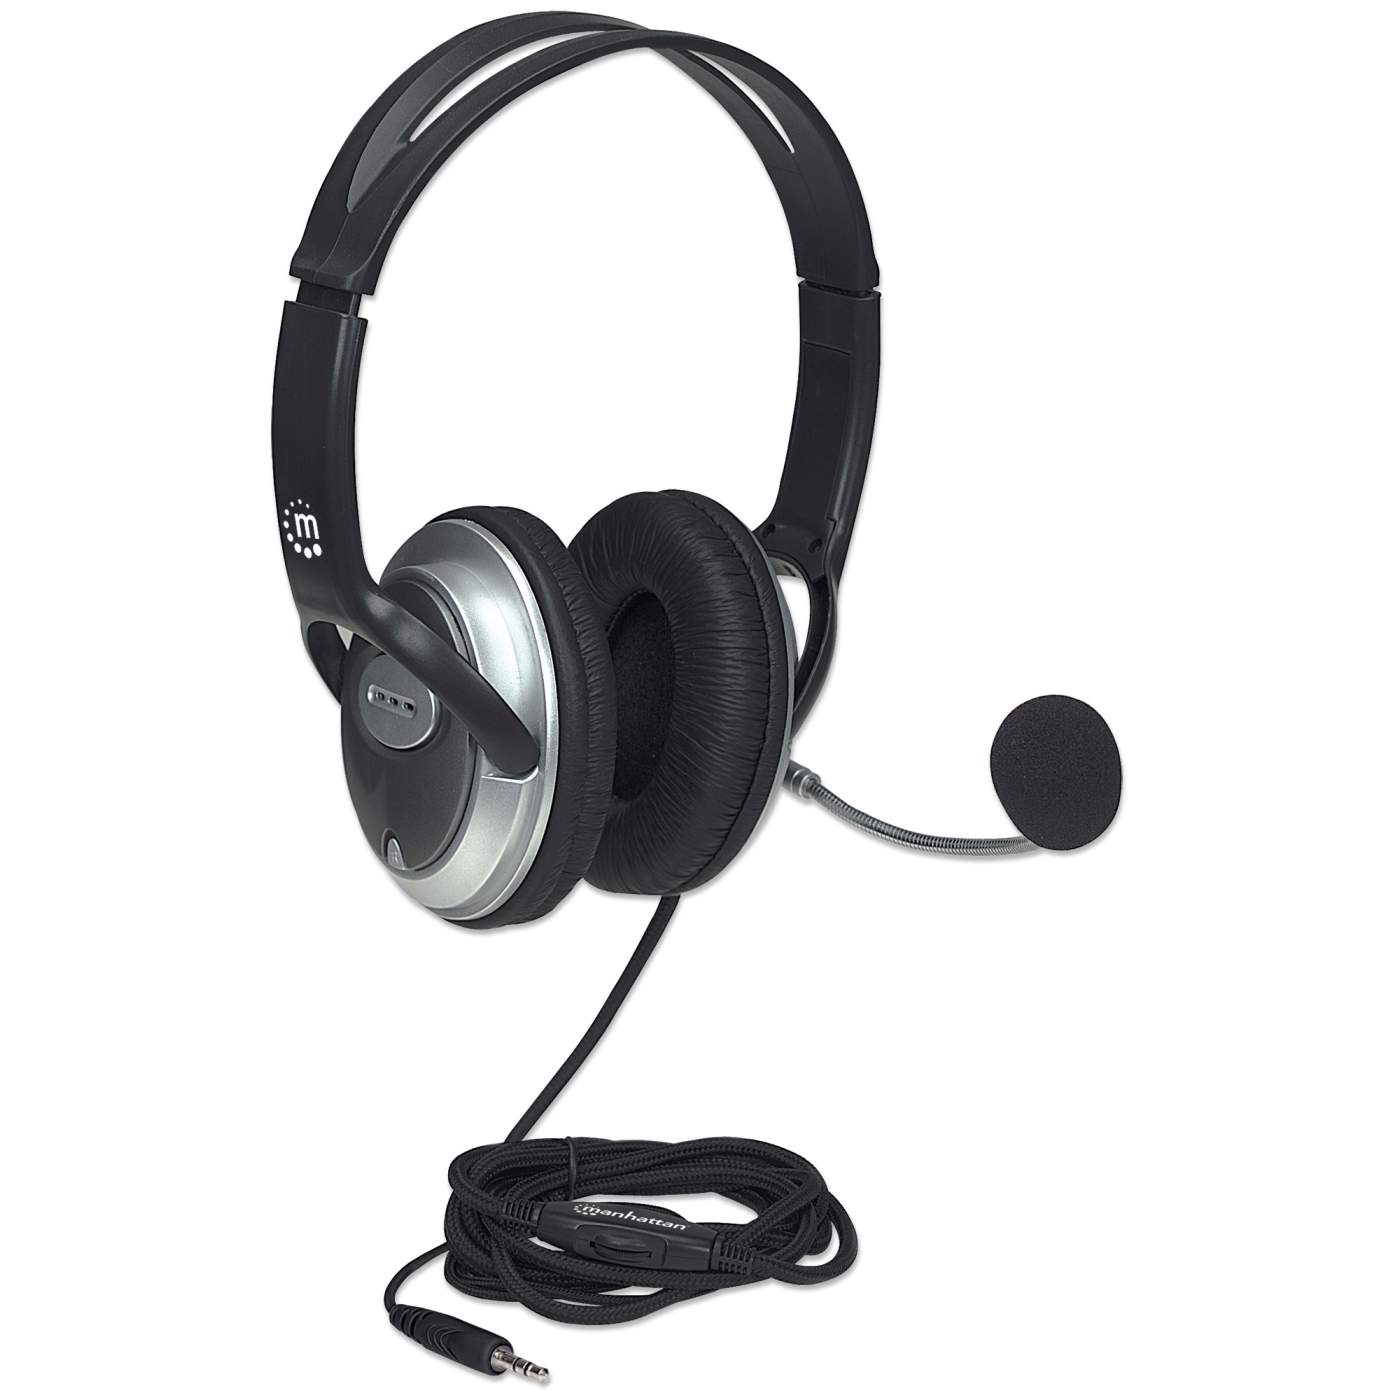 Earphone for Hi-Tech S306 Amaze - Handsfree, In-Ear Headphone, White